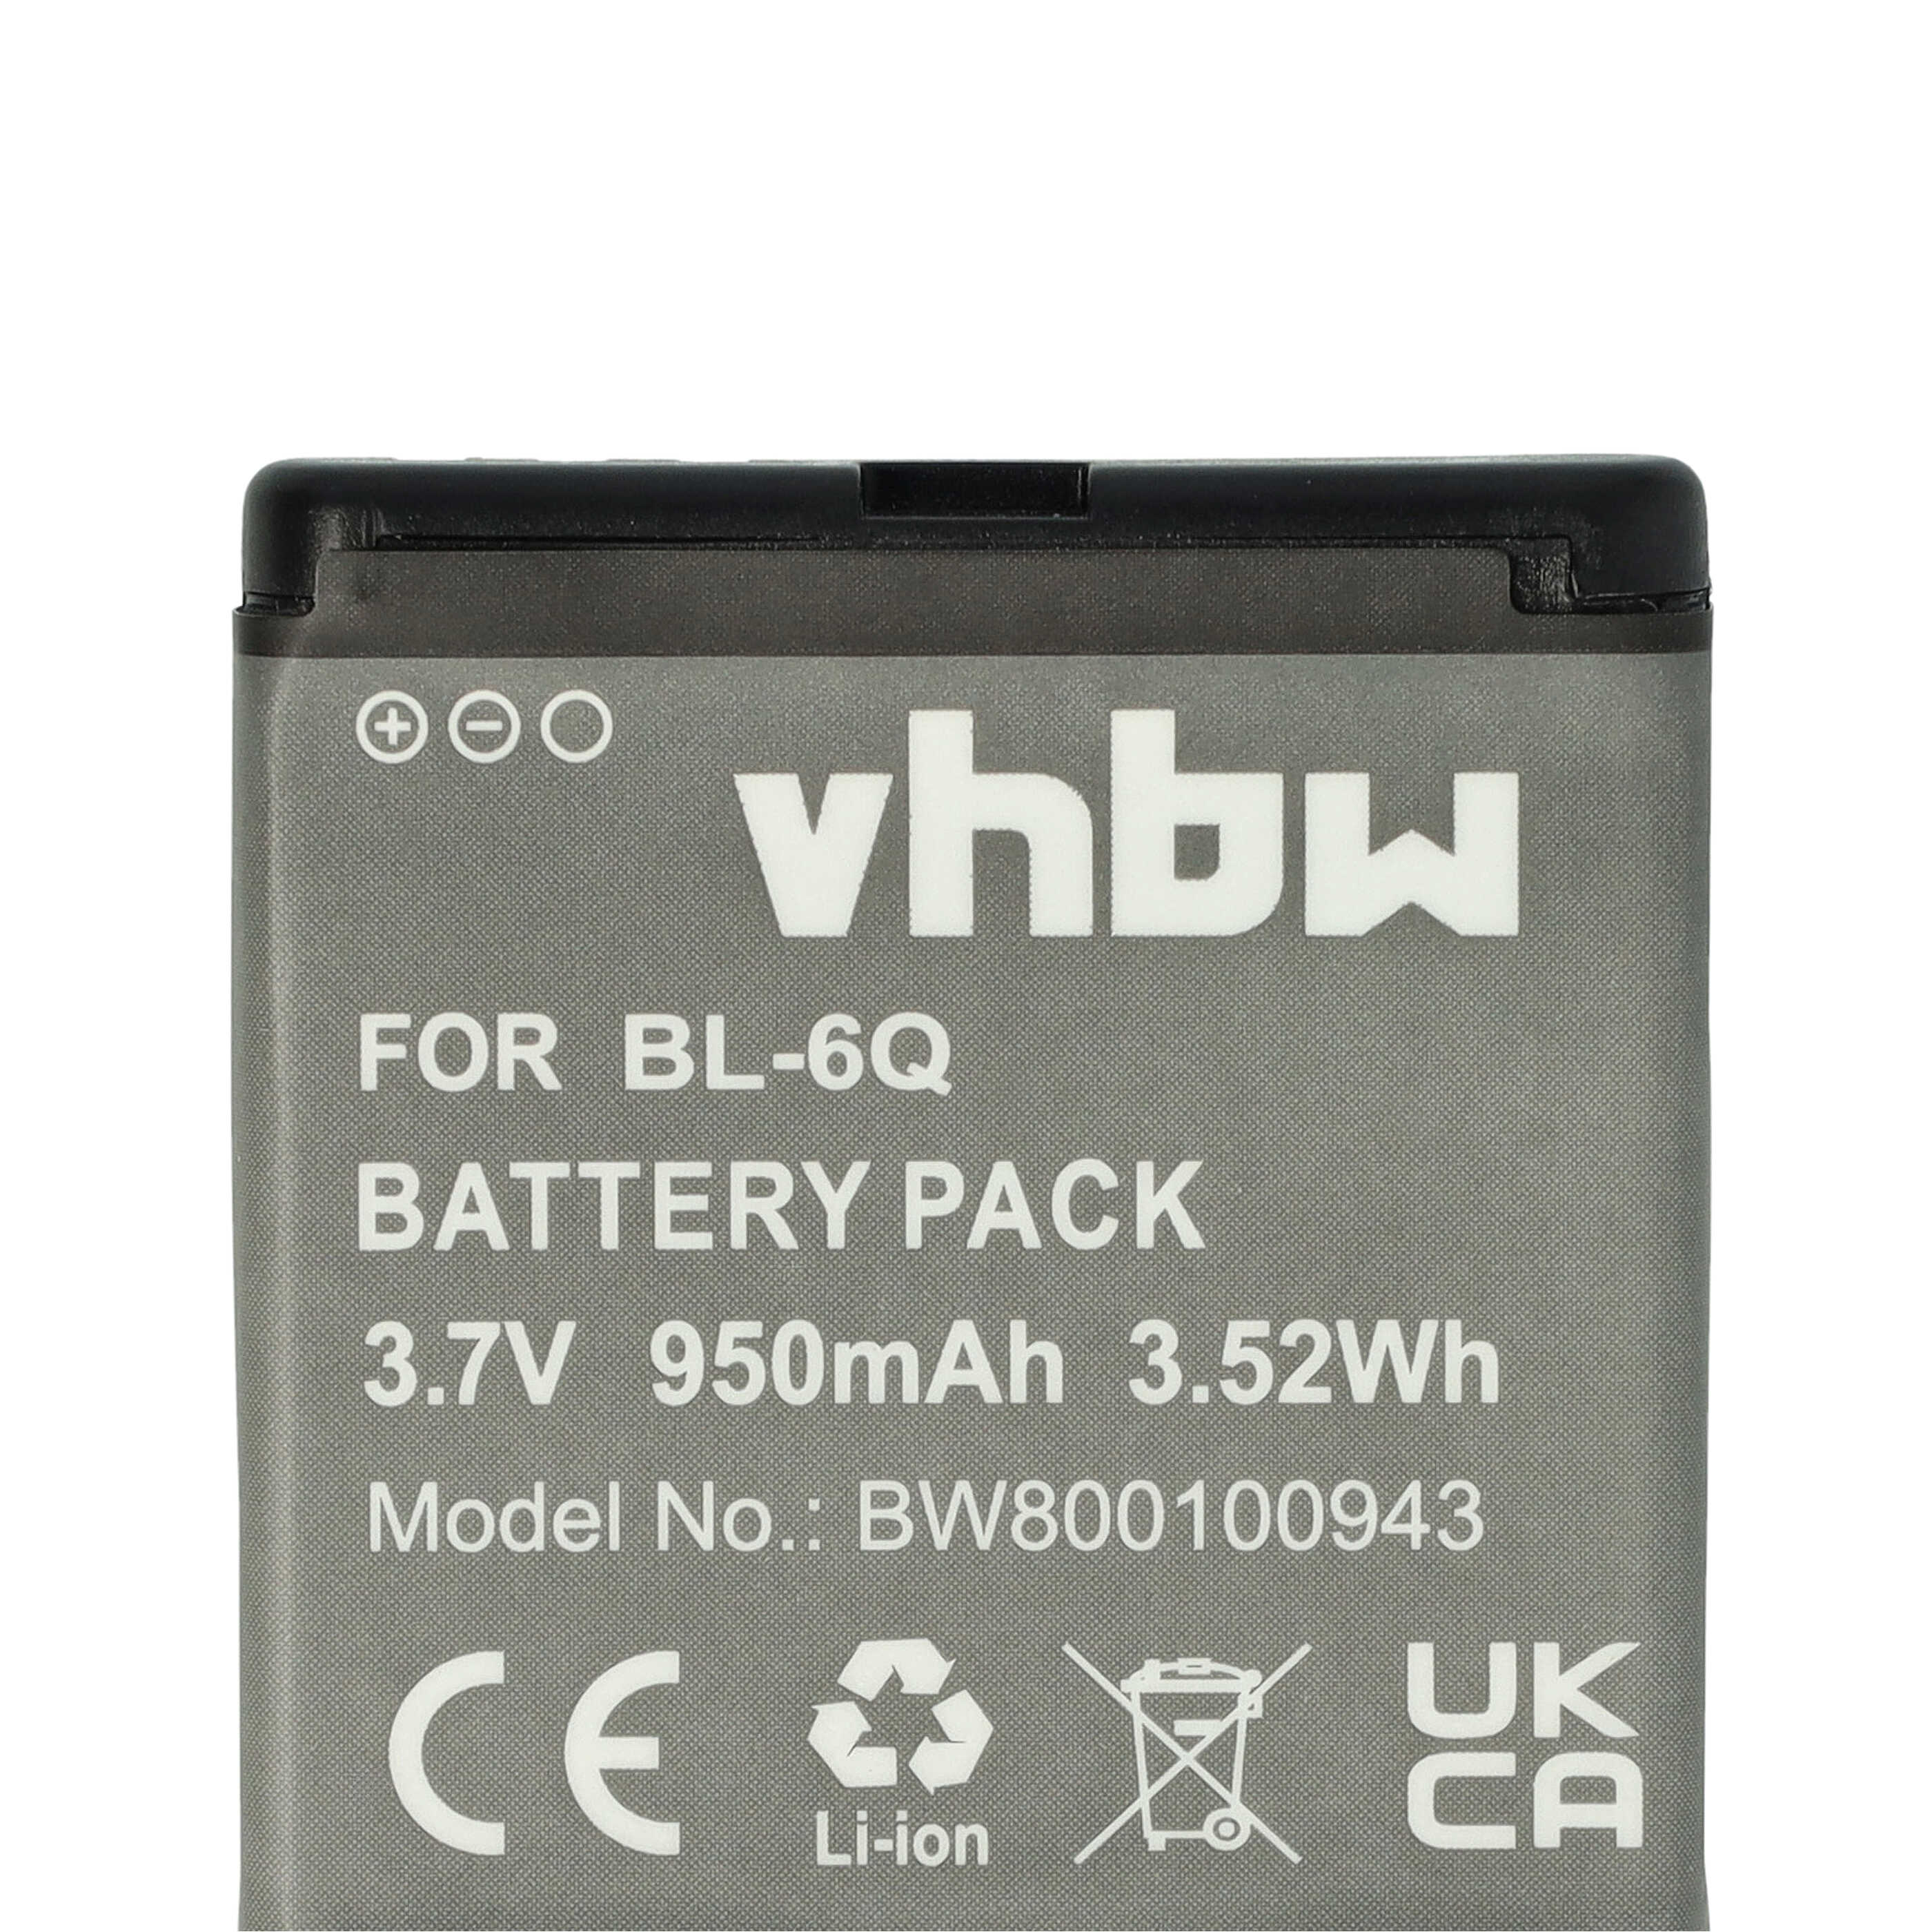 Batterie remplace Nokia BL-6Q pour téléphone portable - 950mAh, 3,7V, Li-ion